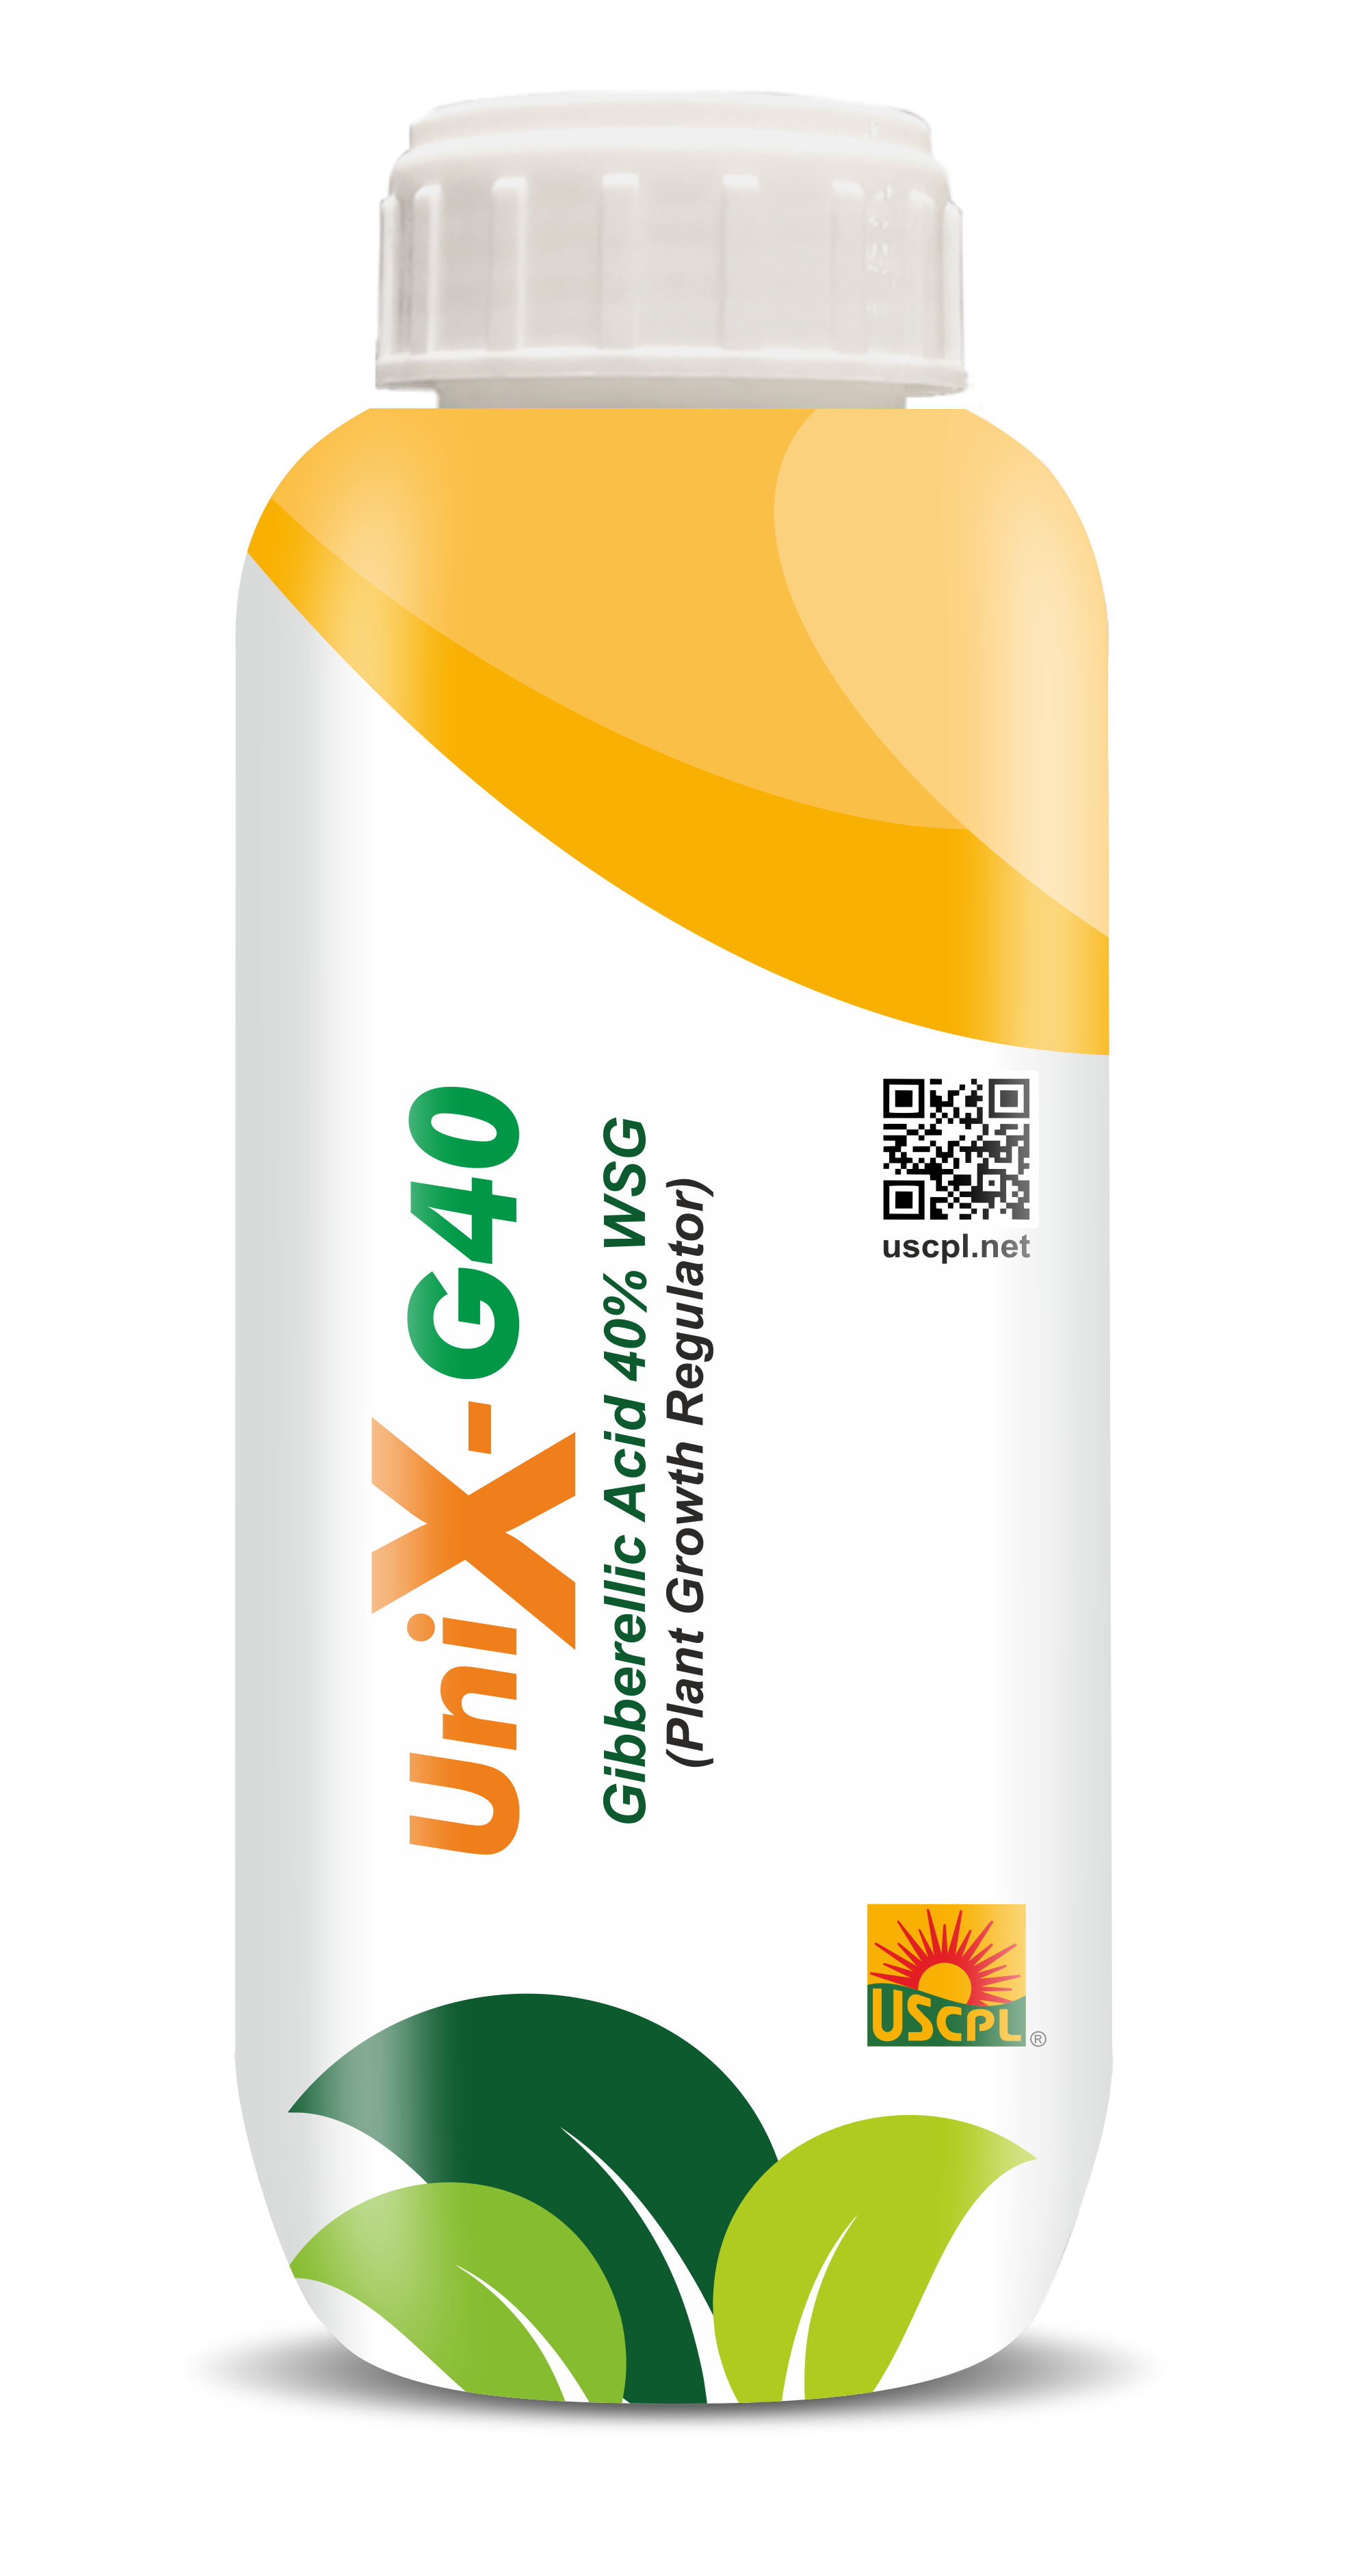 UniX-G40